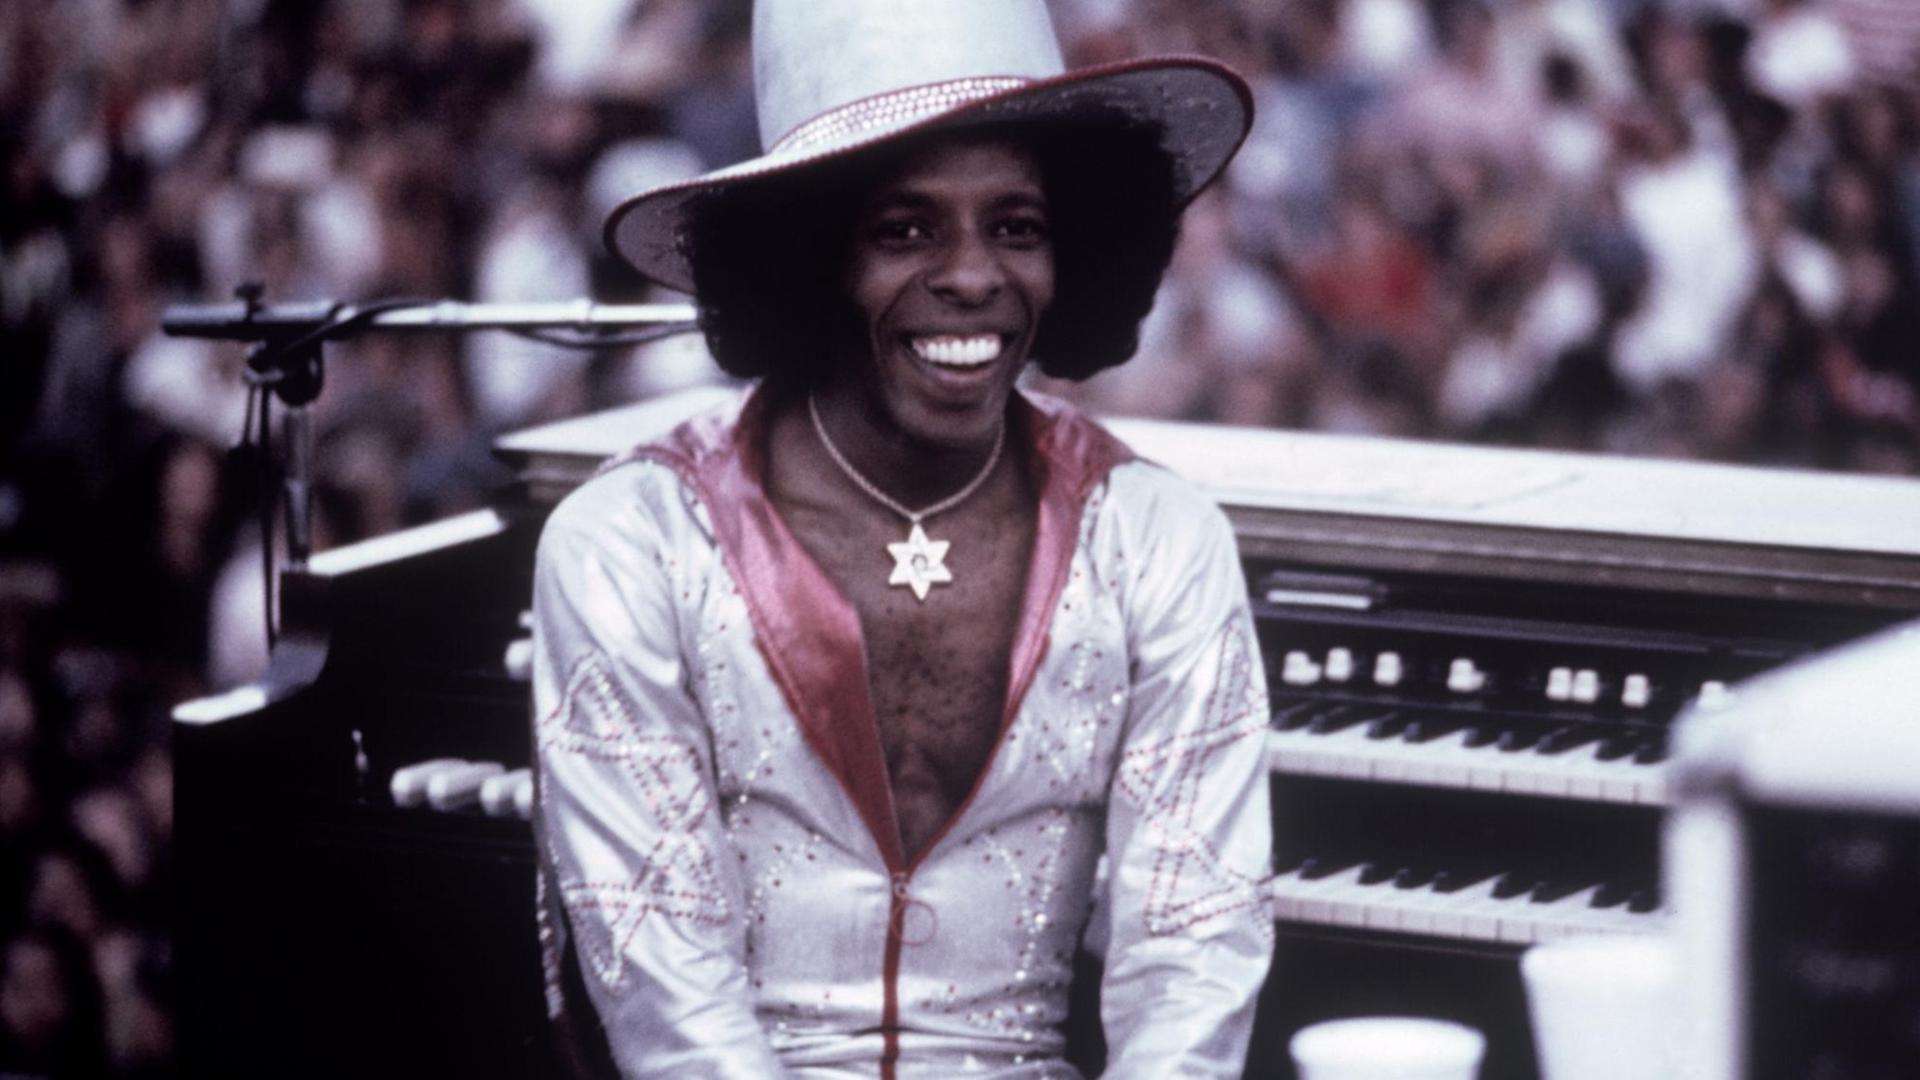 Der US-Musiker Sly Stone sitzt 1974 in einem weißglänzenden Anzug bei einem Auftritt auf einer Bühne.